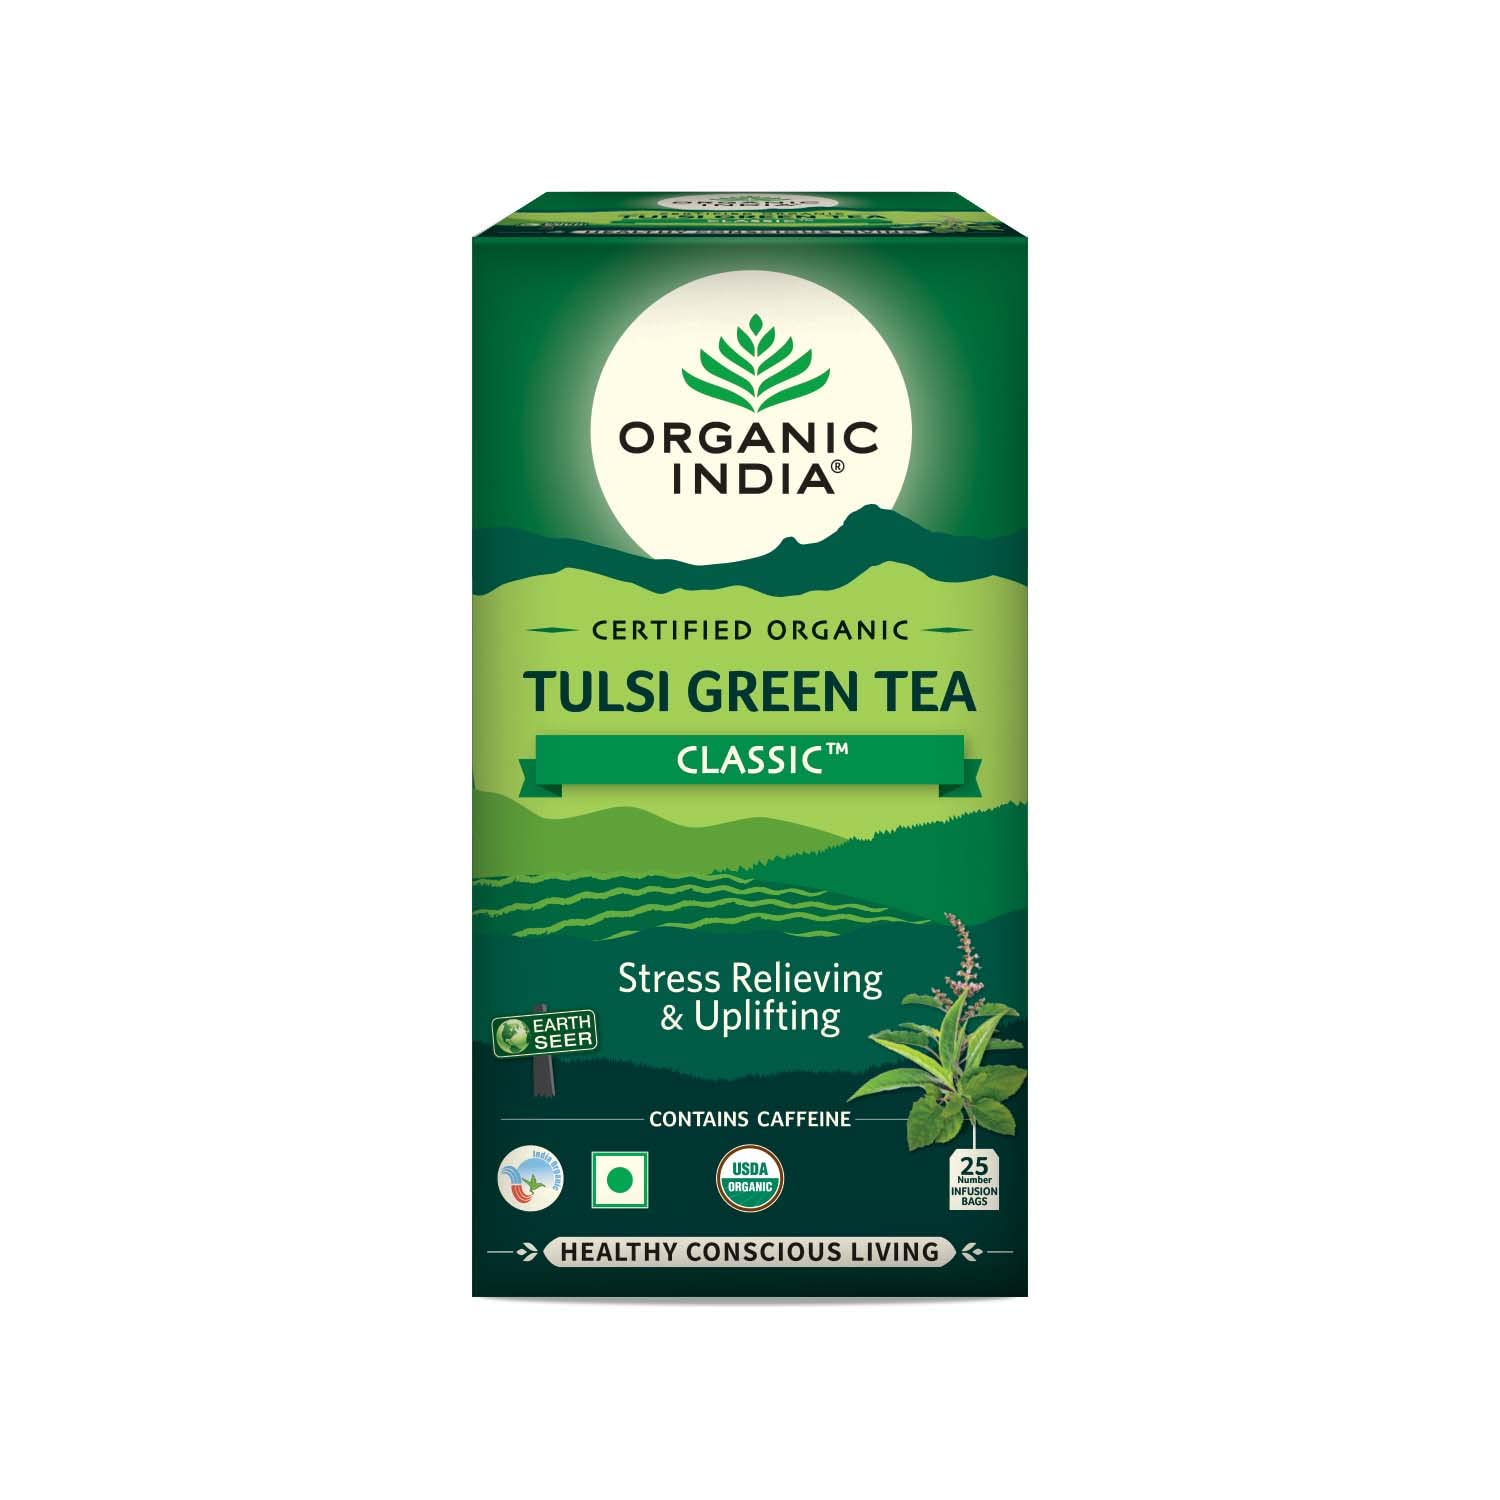 Organic India Certified Organic Tulsi Green Tea Classic 25 Bags